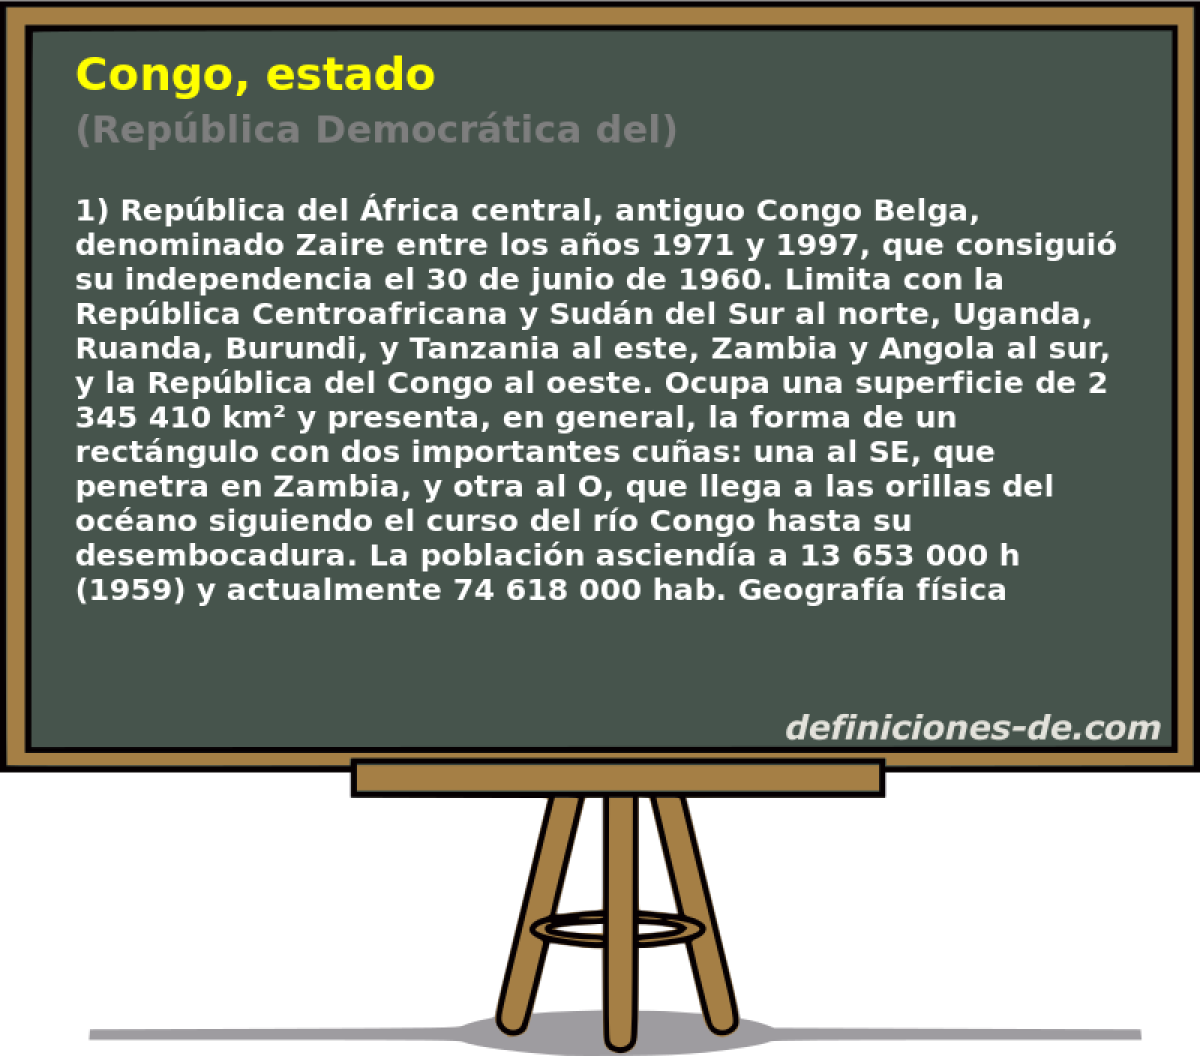 Congo, estado (Repblica Democrtica del)